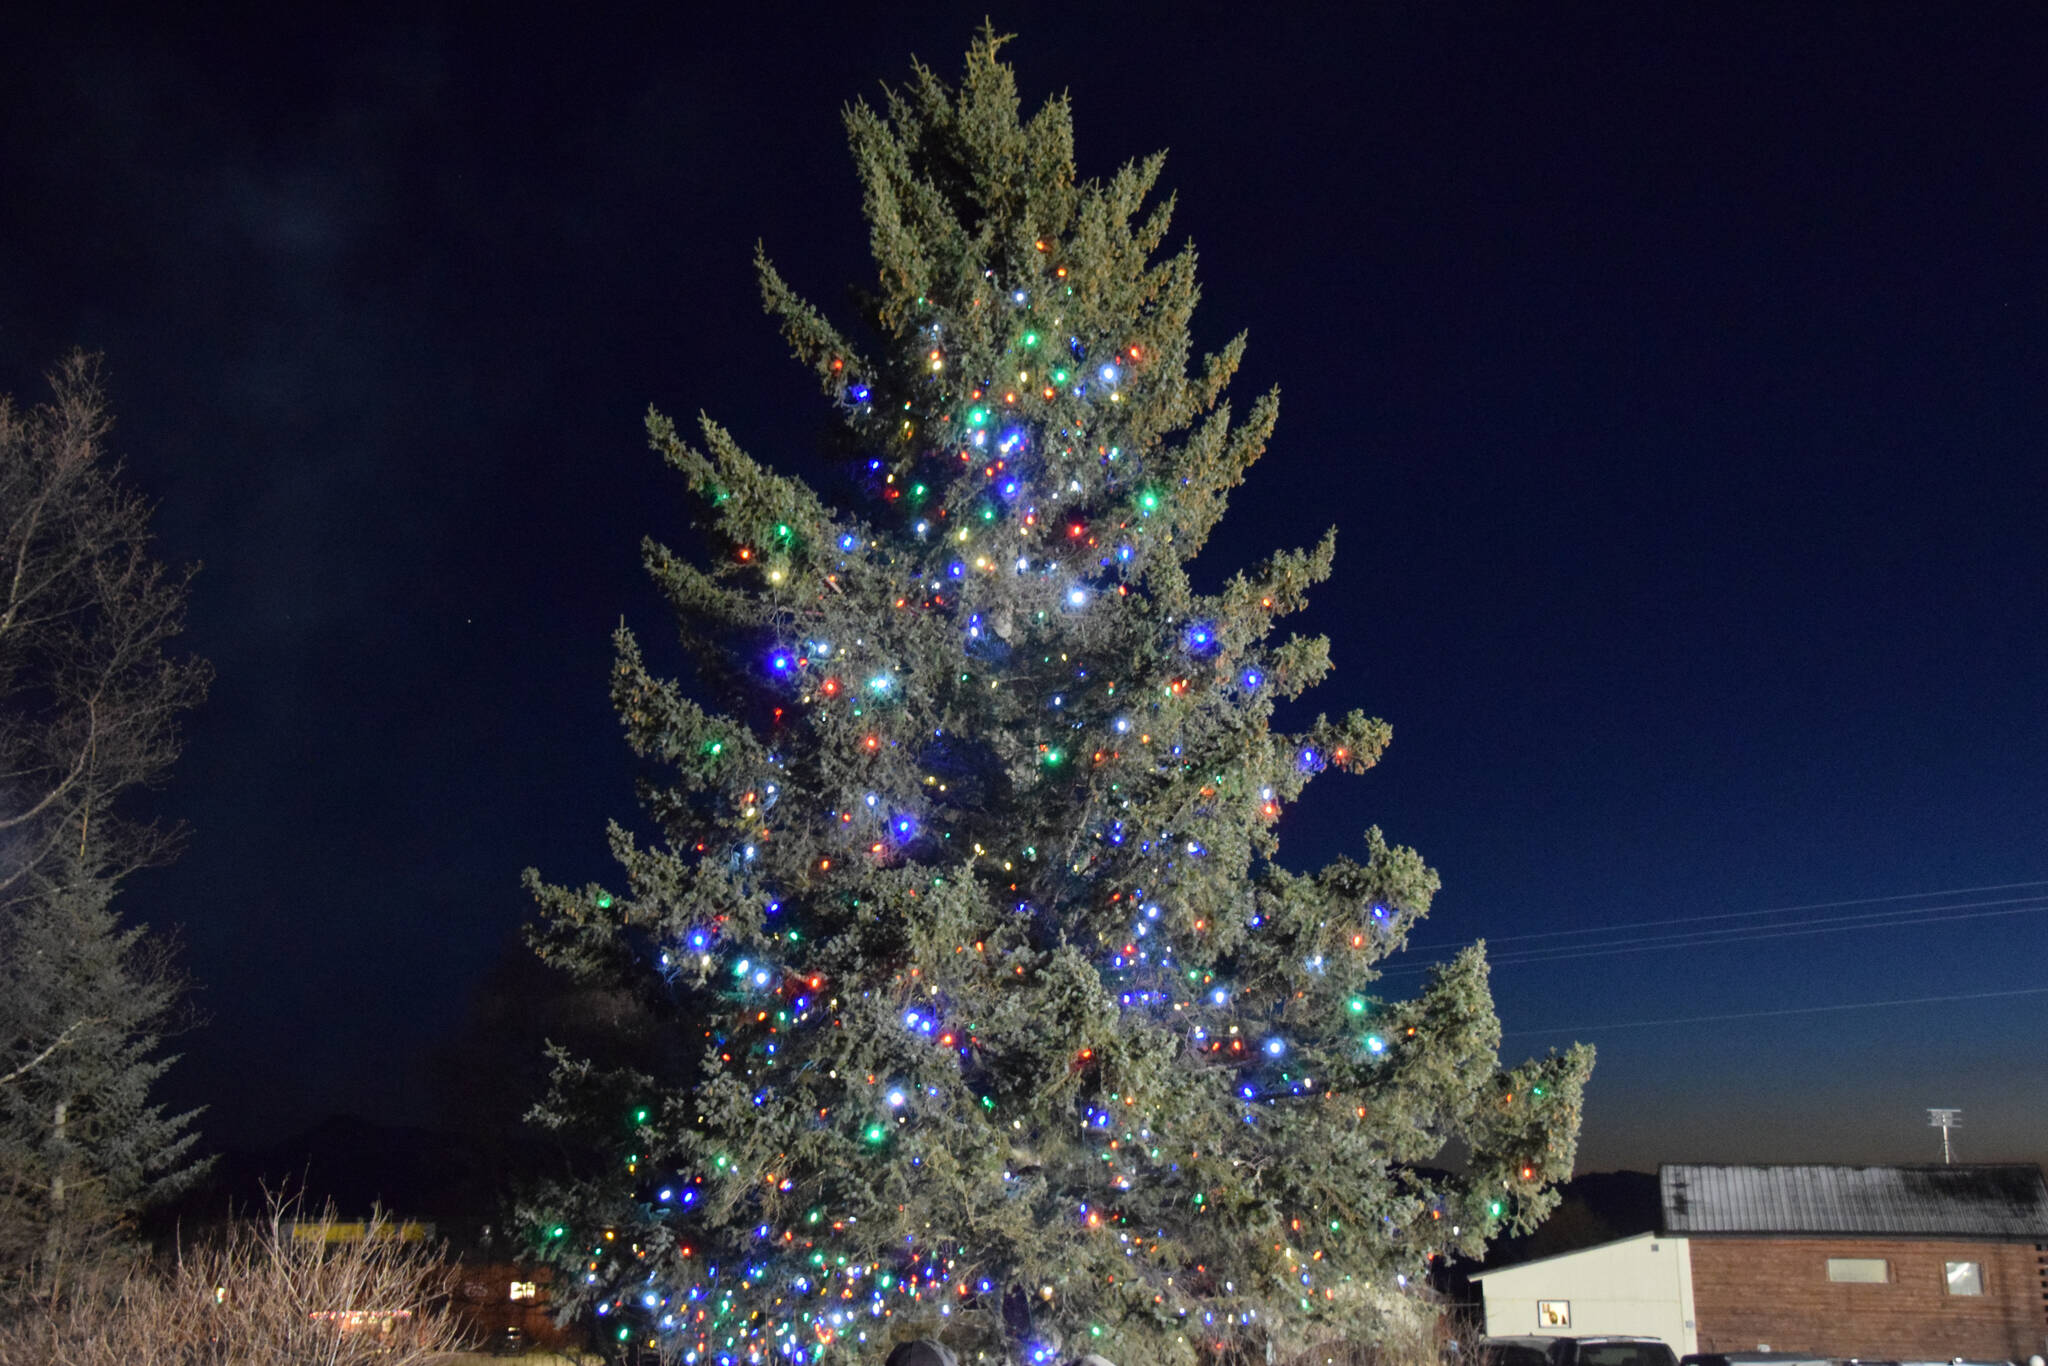 The Christmas tree on Thursday, Dec. 1, 2022 at Homer Chamber of Commerce in Homer. (Photo by Charlie Menke / Homer News)